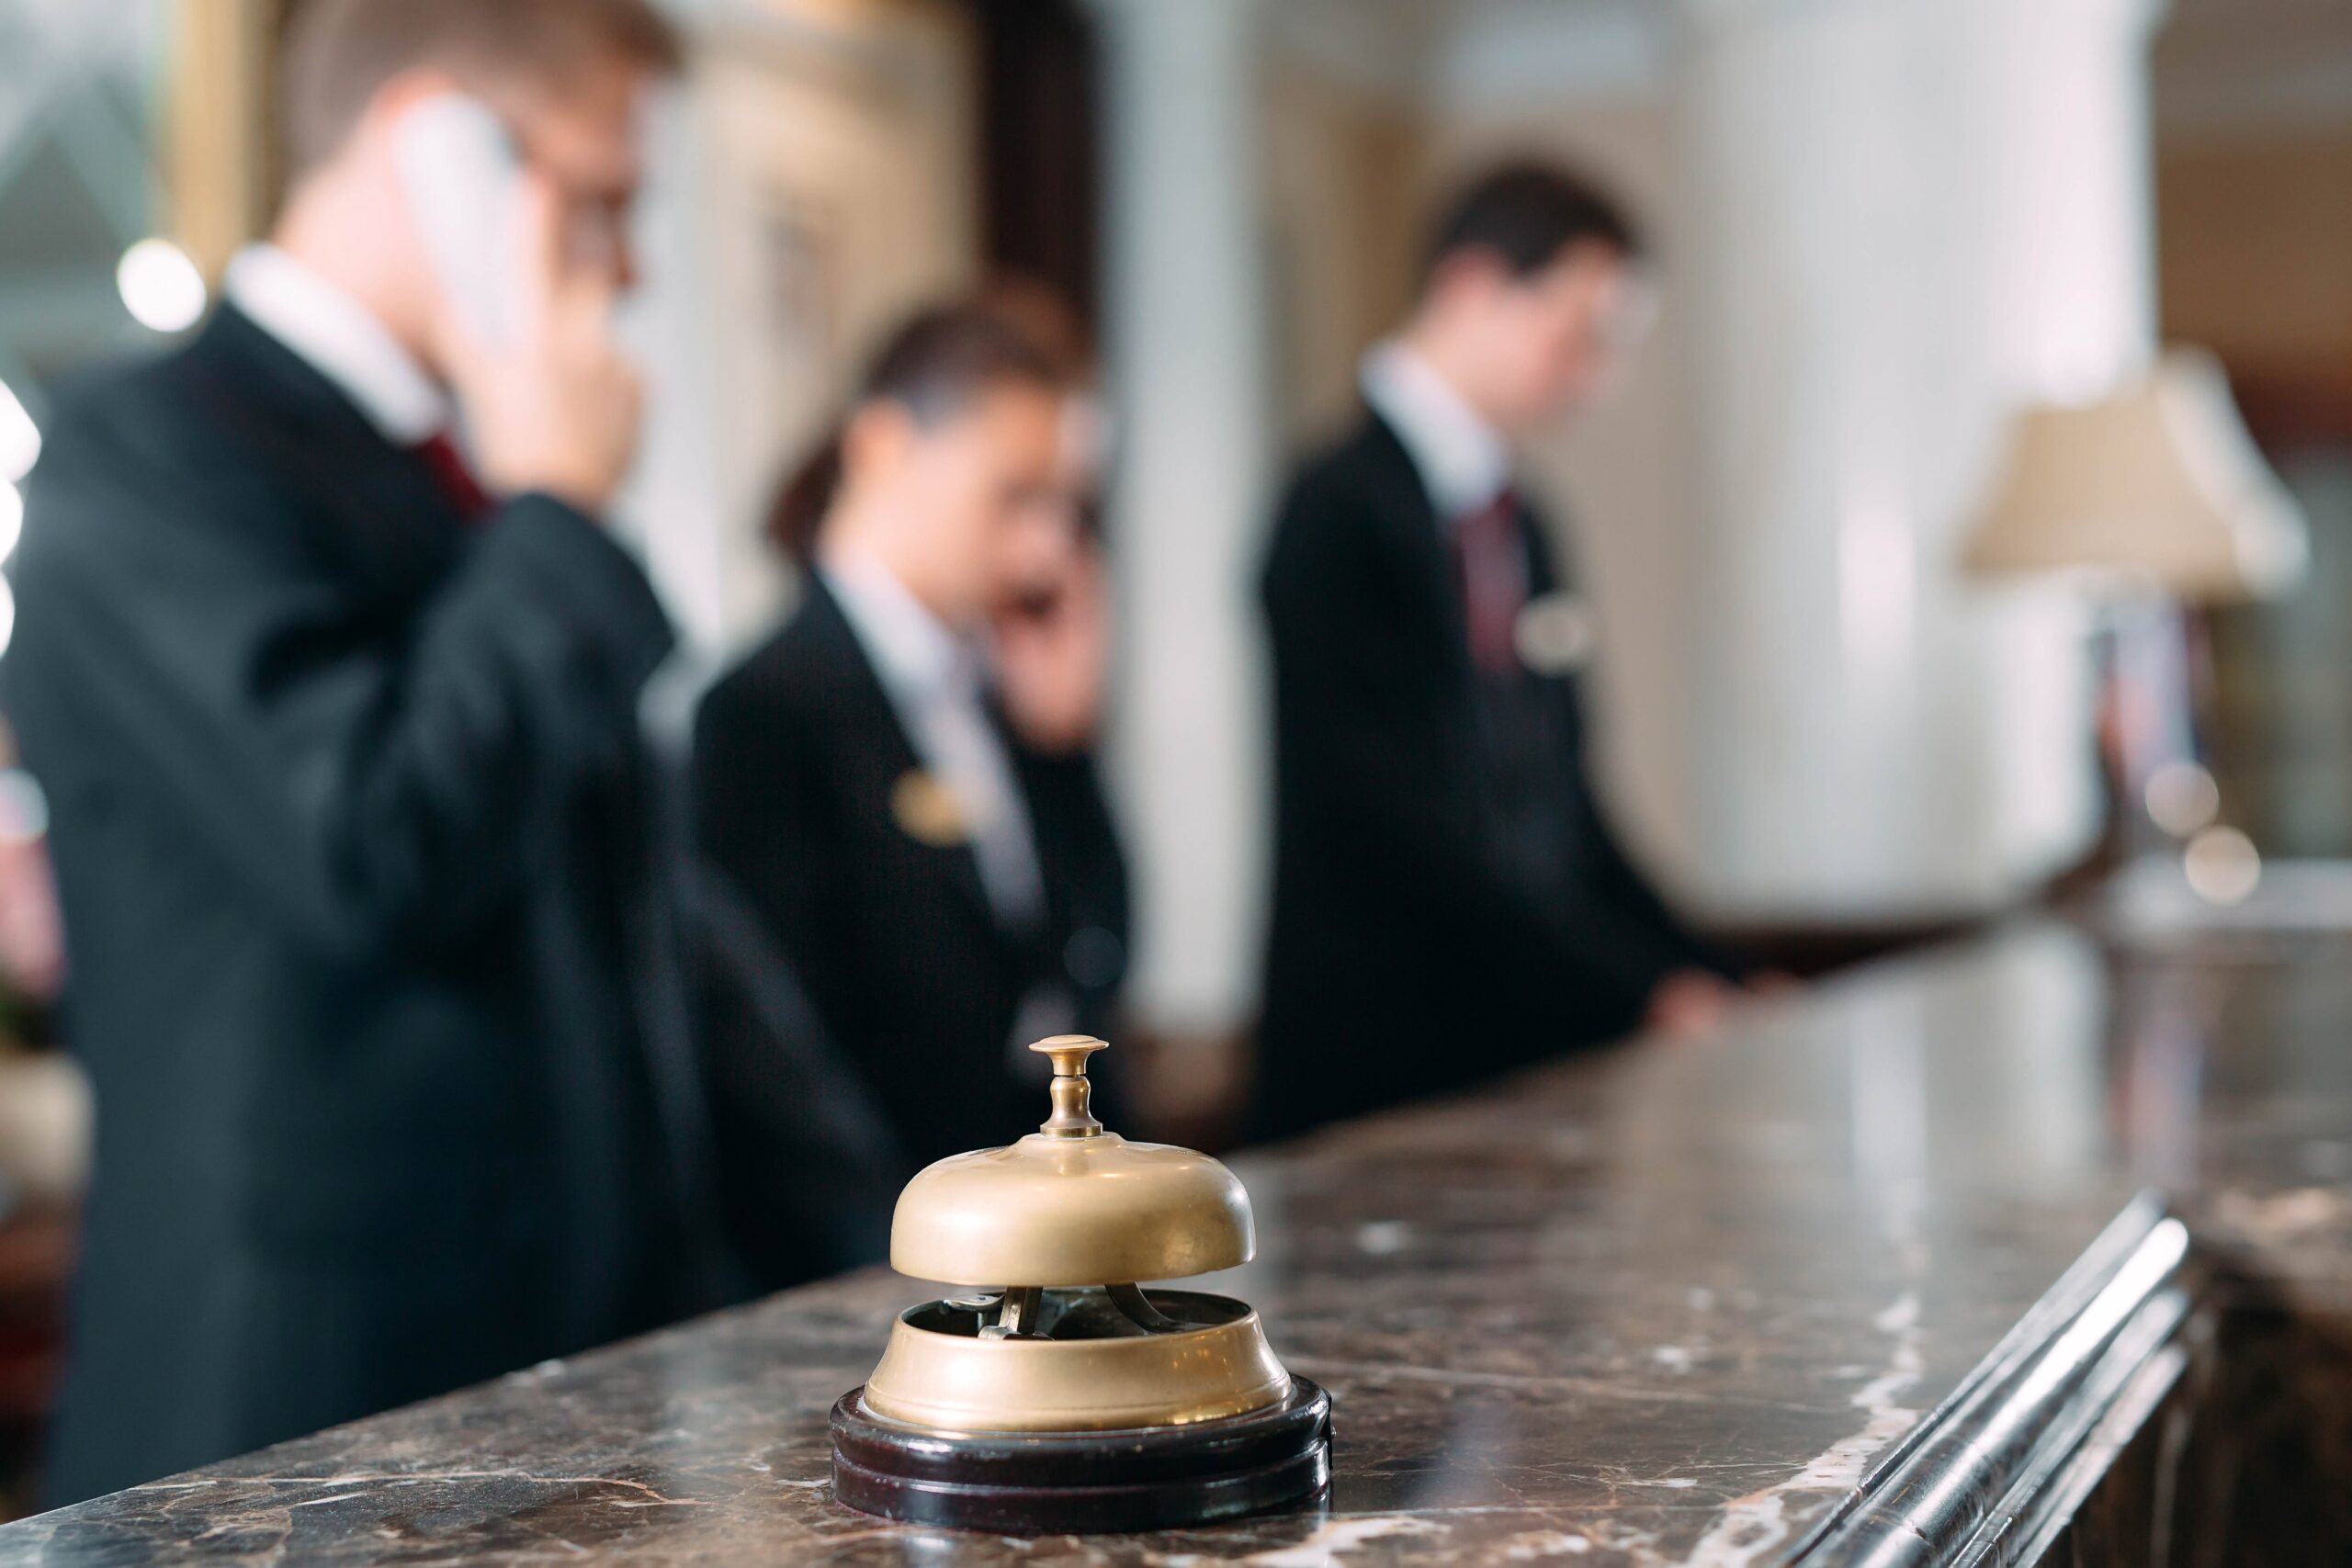 Trata y explotación de personas en el sector hotelero: ¿cómo hacerle frente?